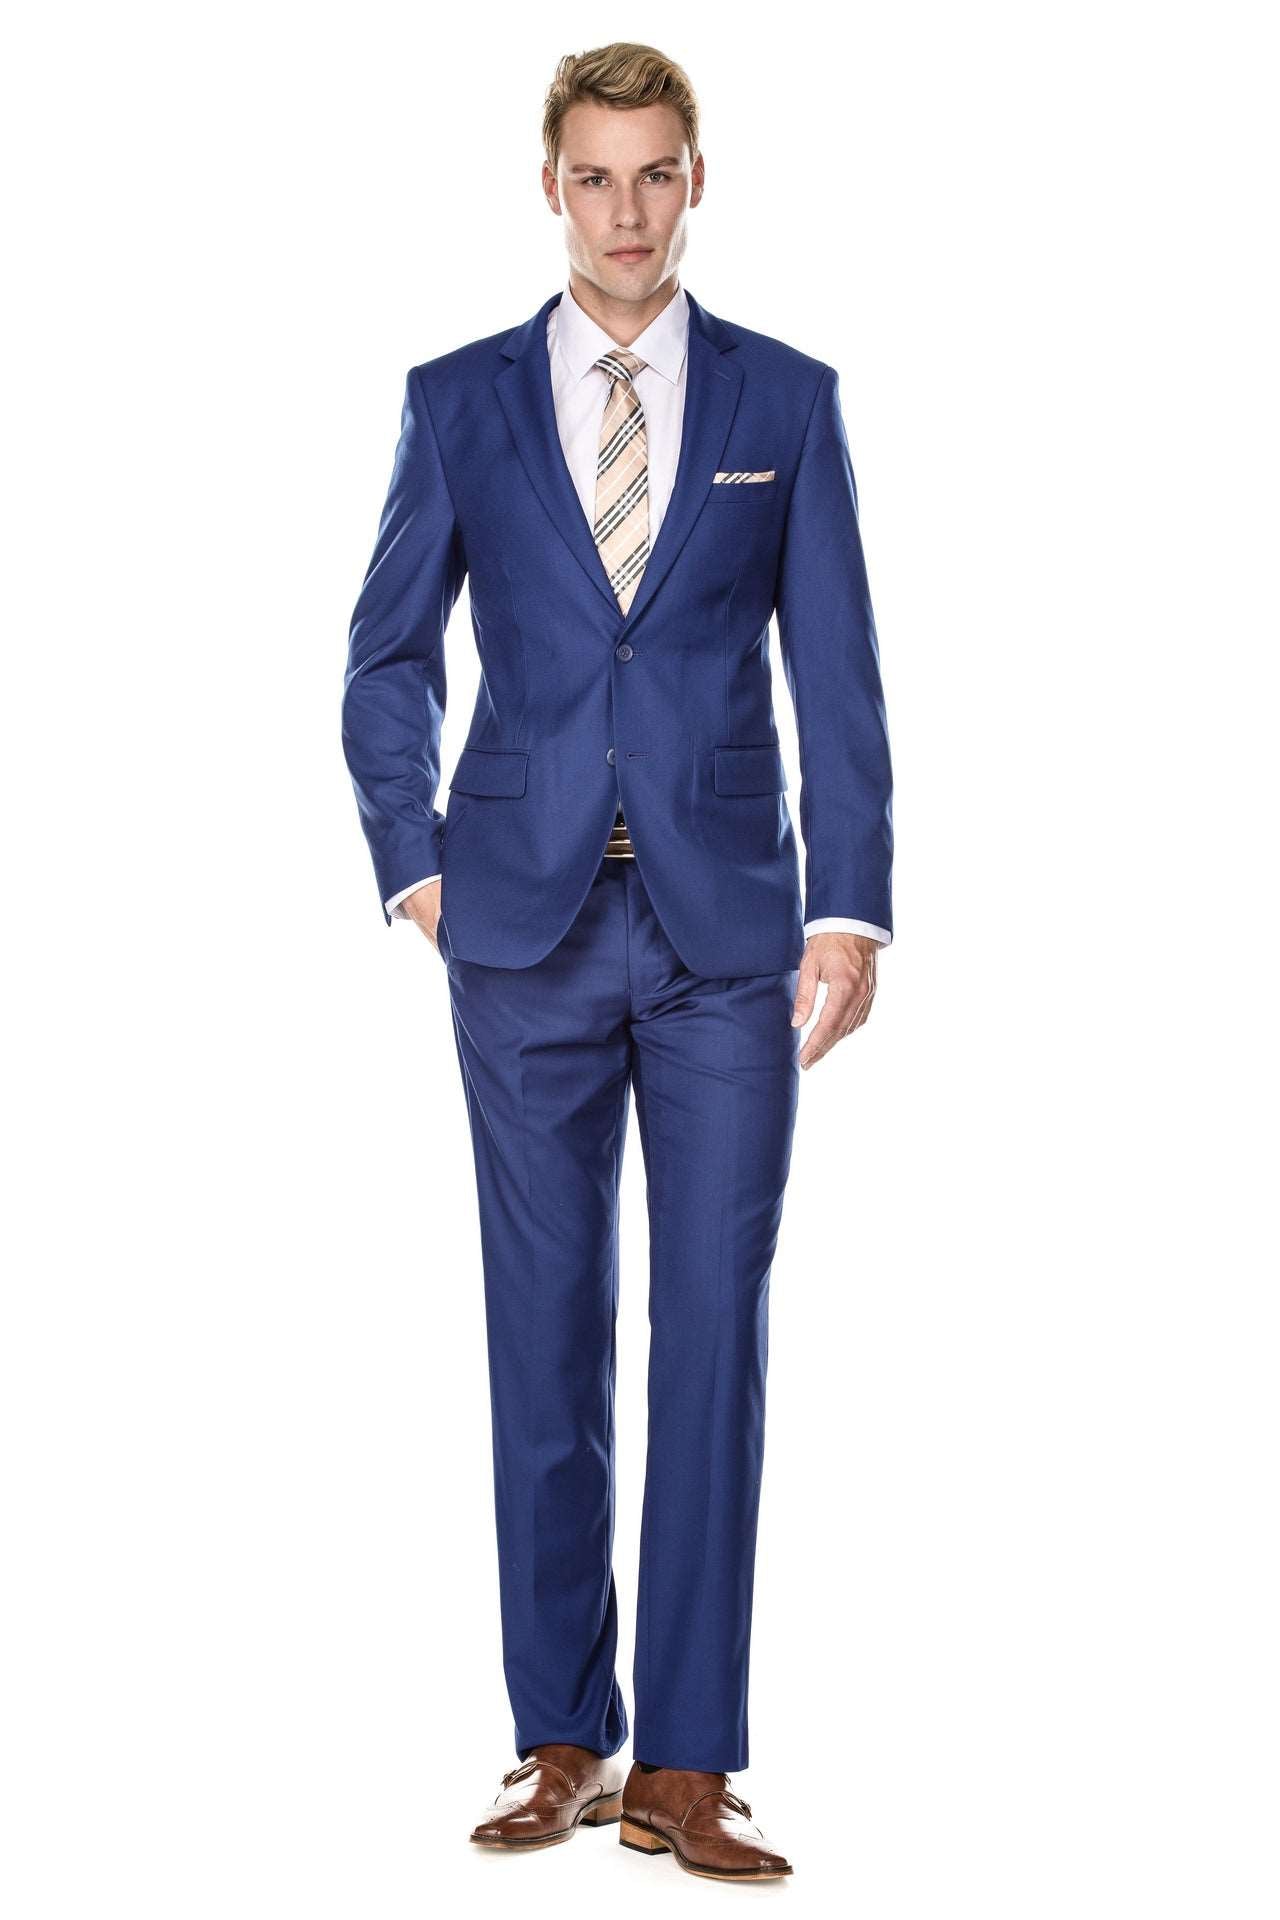 Braveman Men's Classic Fit 2PC Suits | Tan, Blue & Burgundy